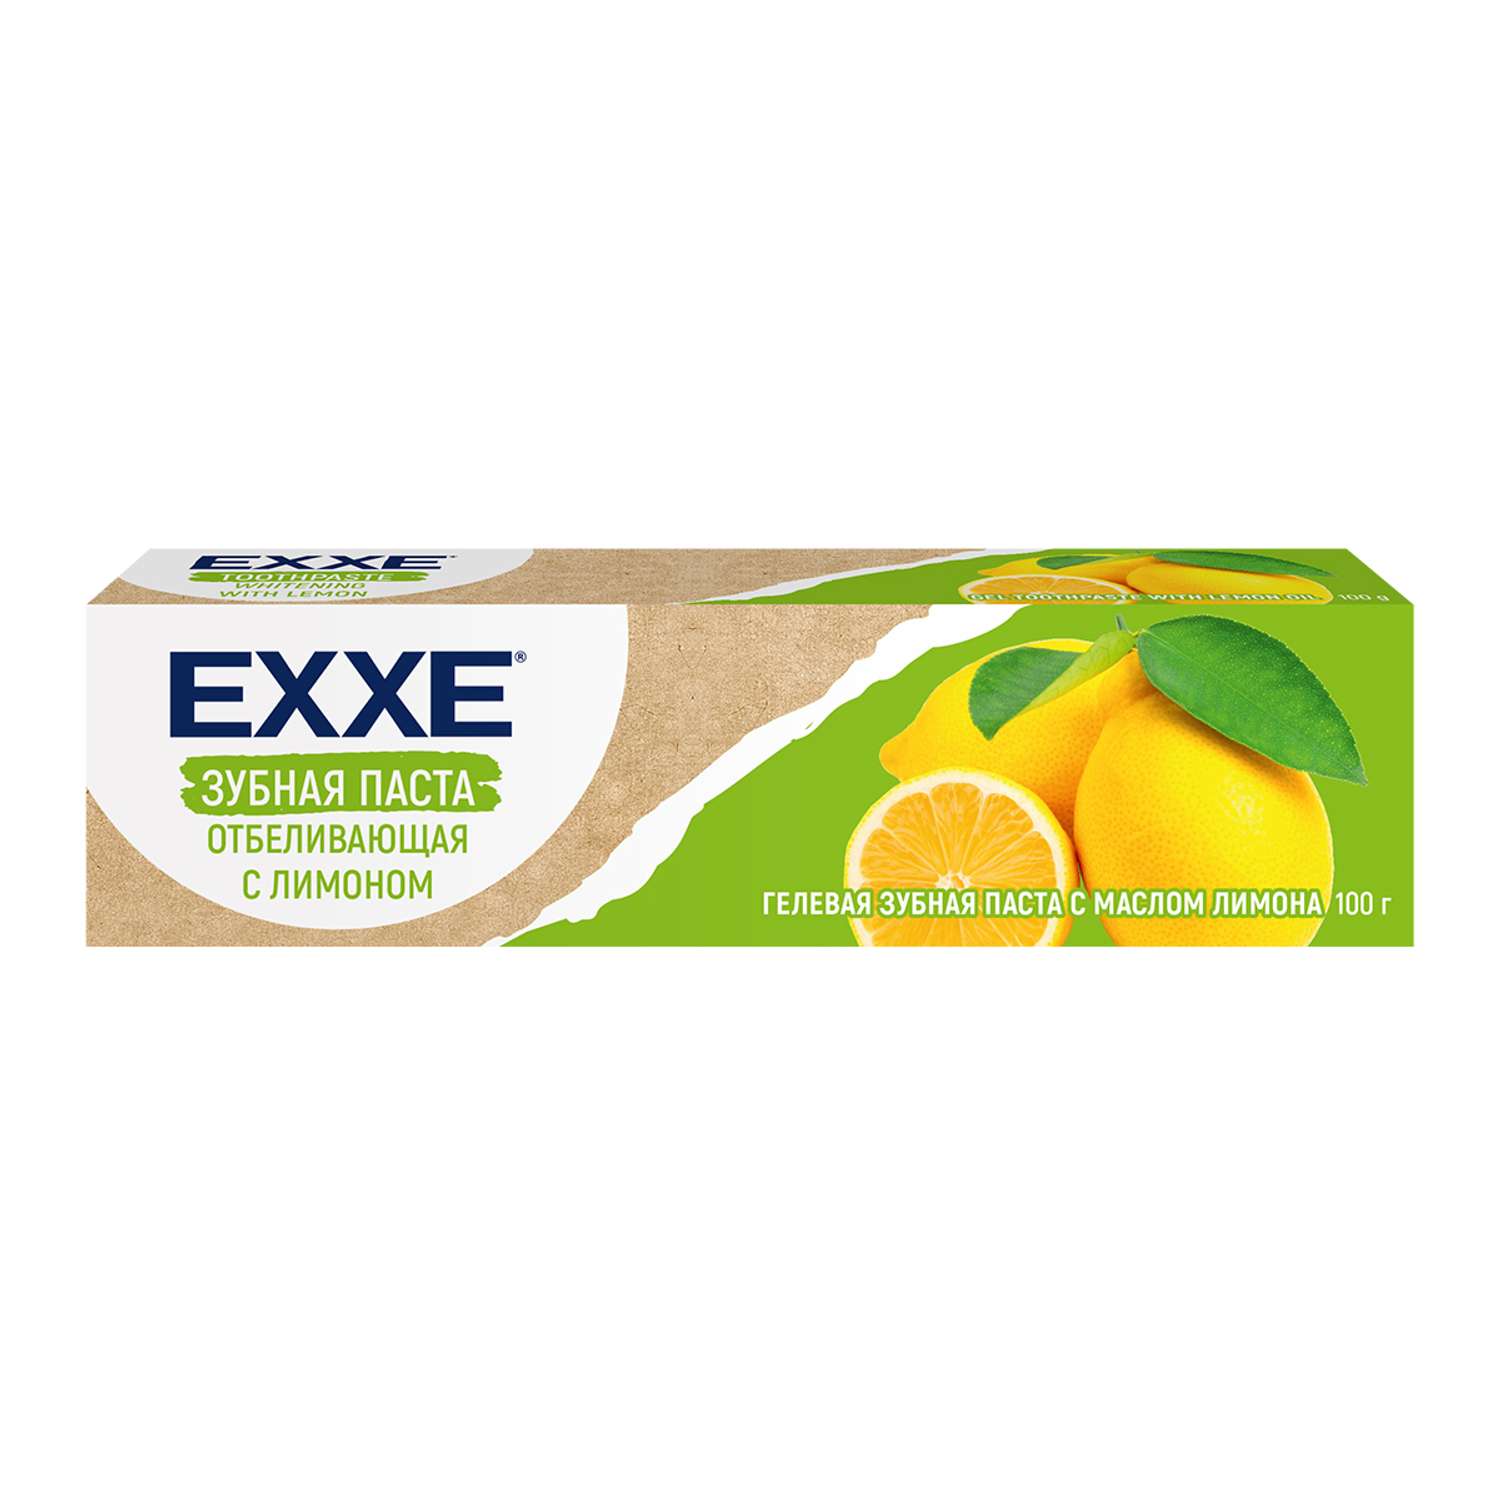 Зубная паста EXXE Отбеливающая с лимоном 100 г - фото 1